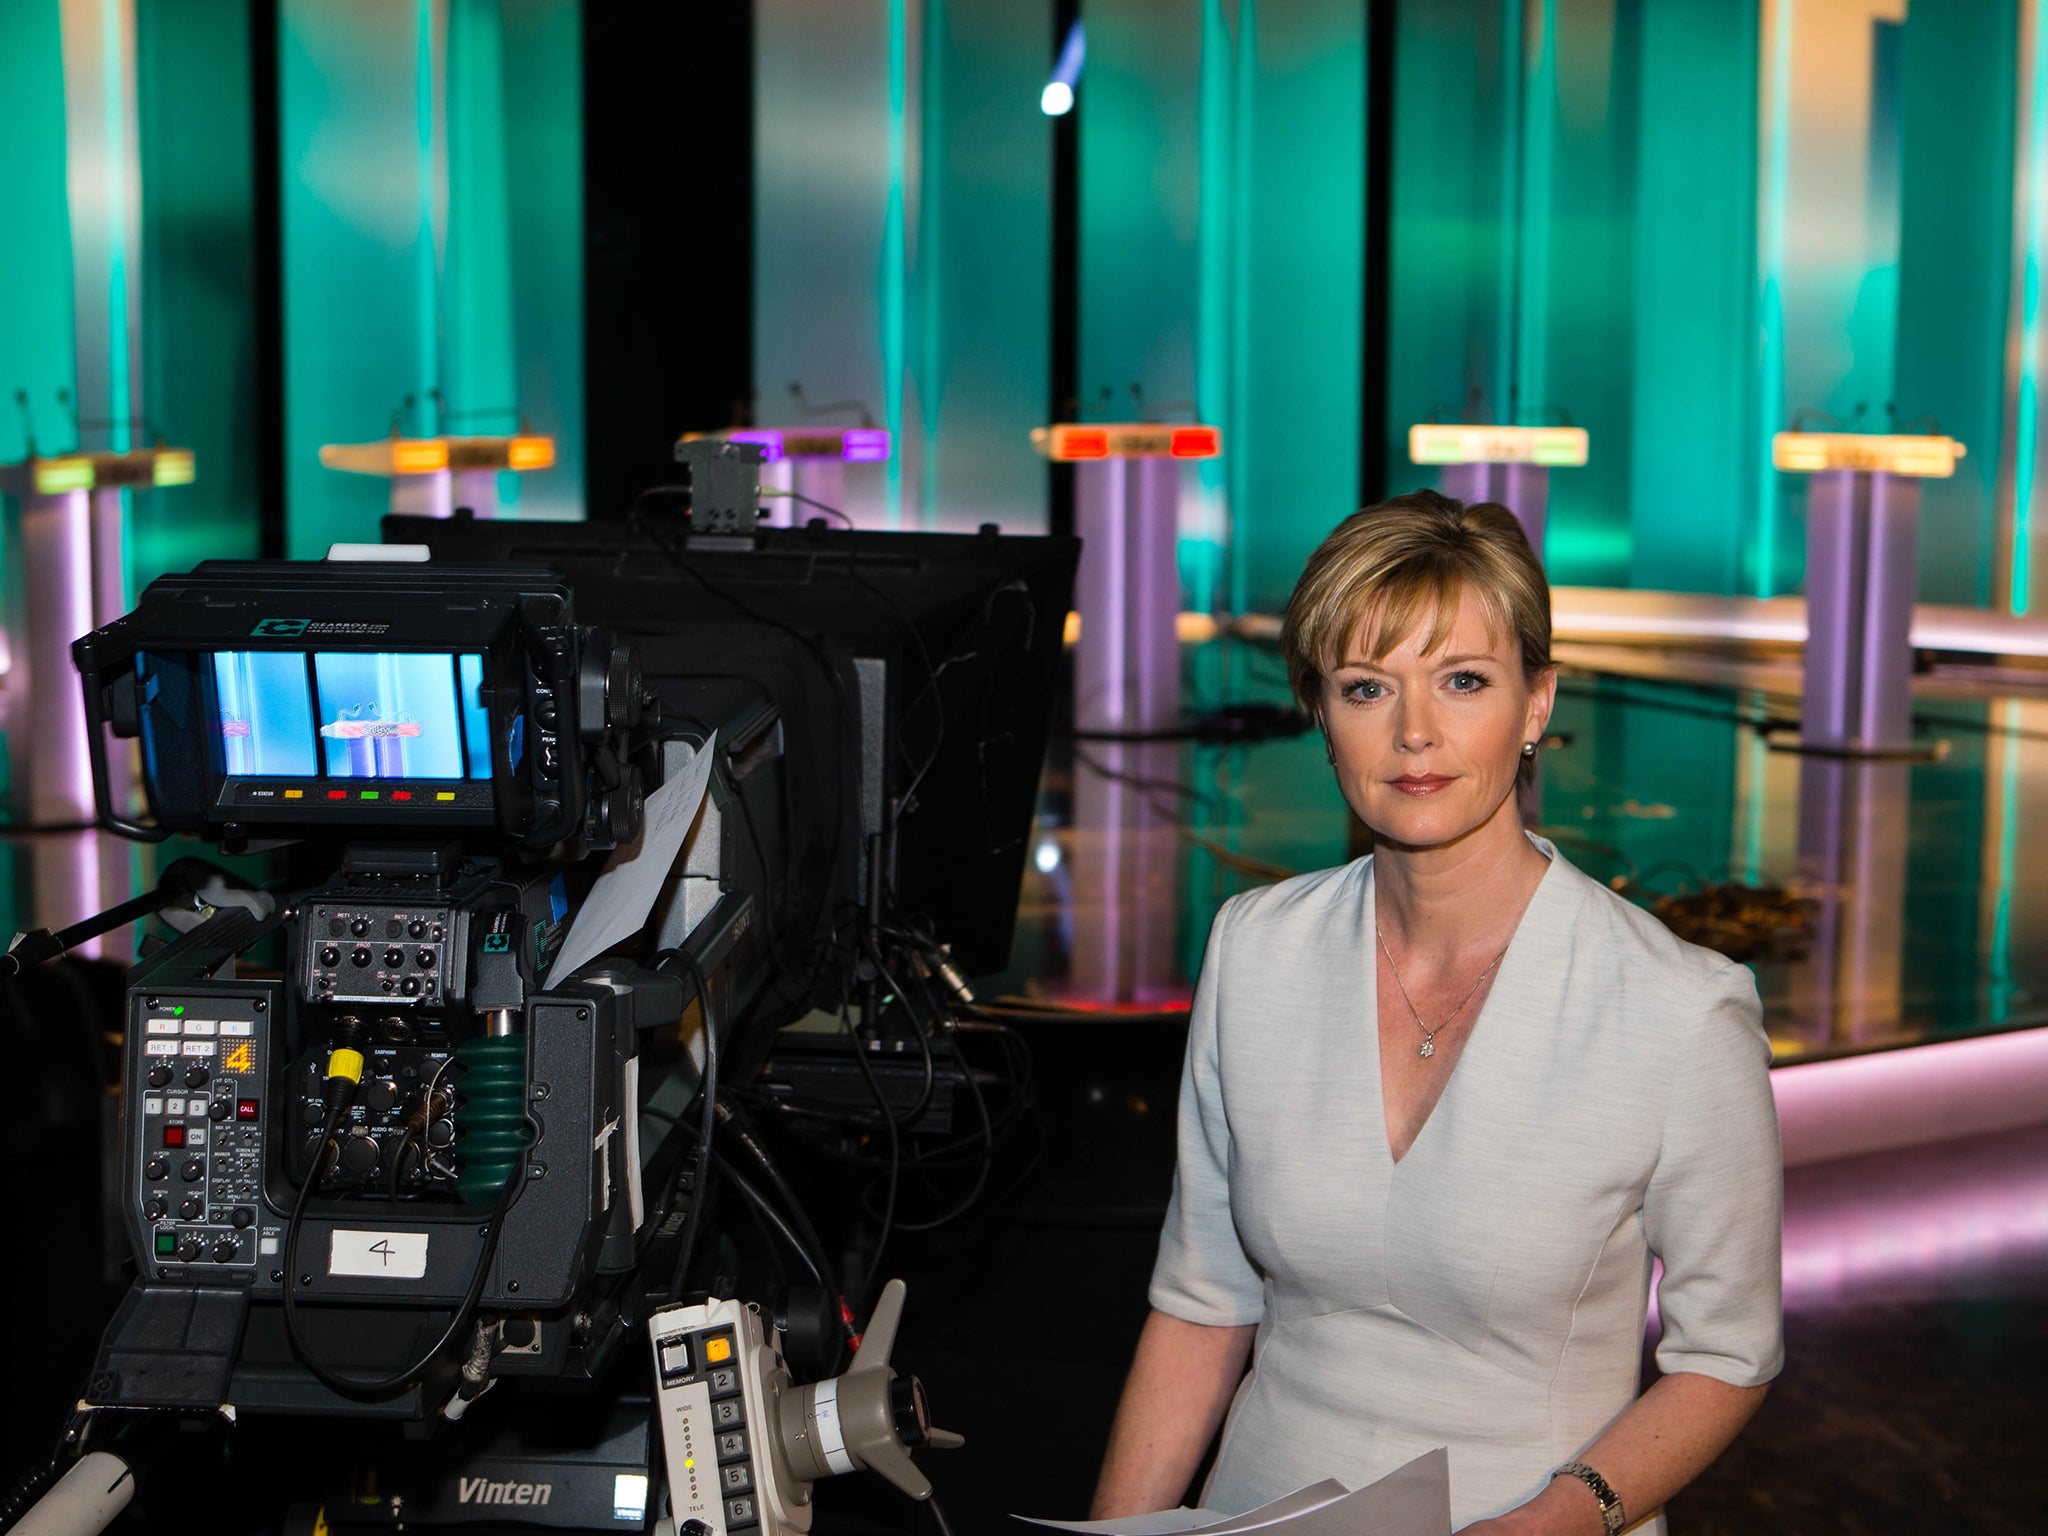 Julie Etchingham preparing for the ITV Leaders' Debate 2015